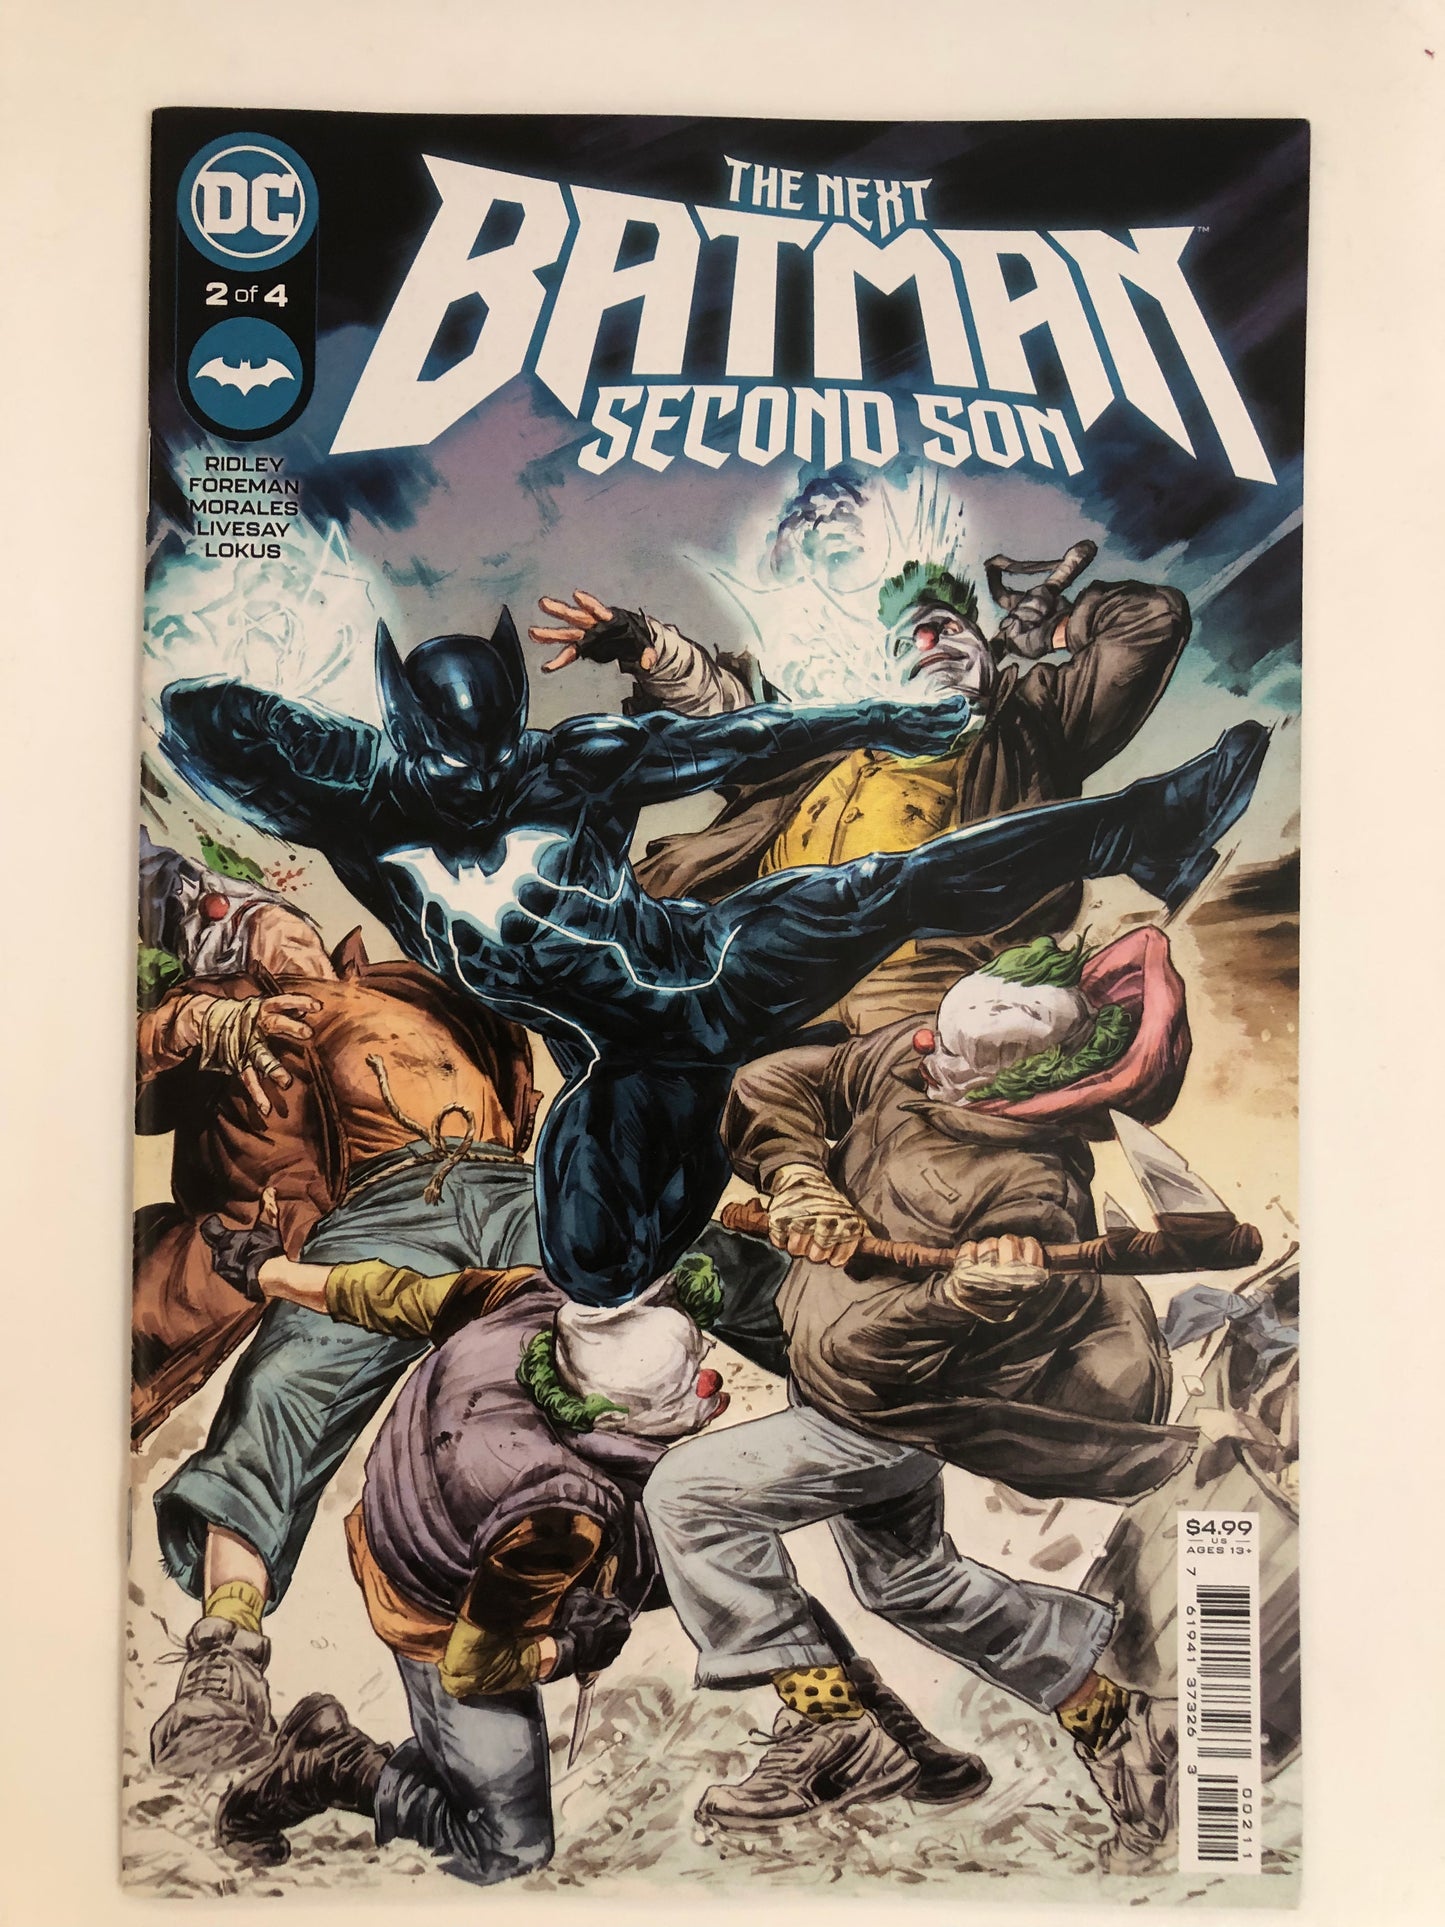 The Next Batman: Second Son 1-4 set